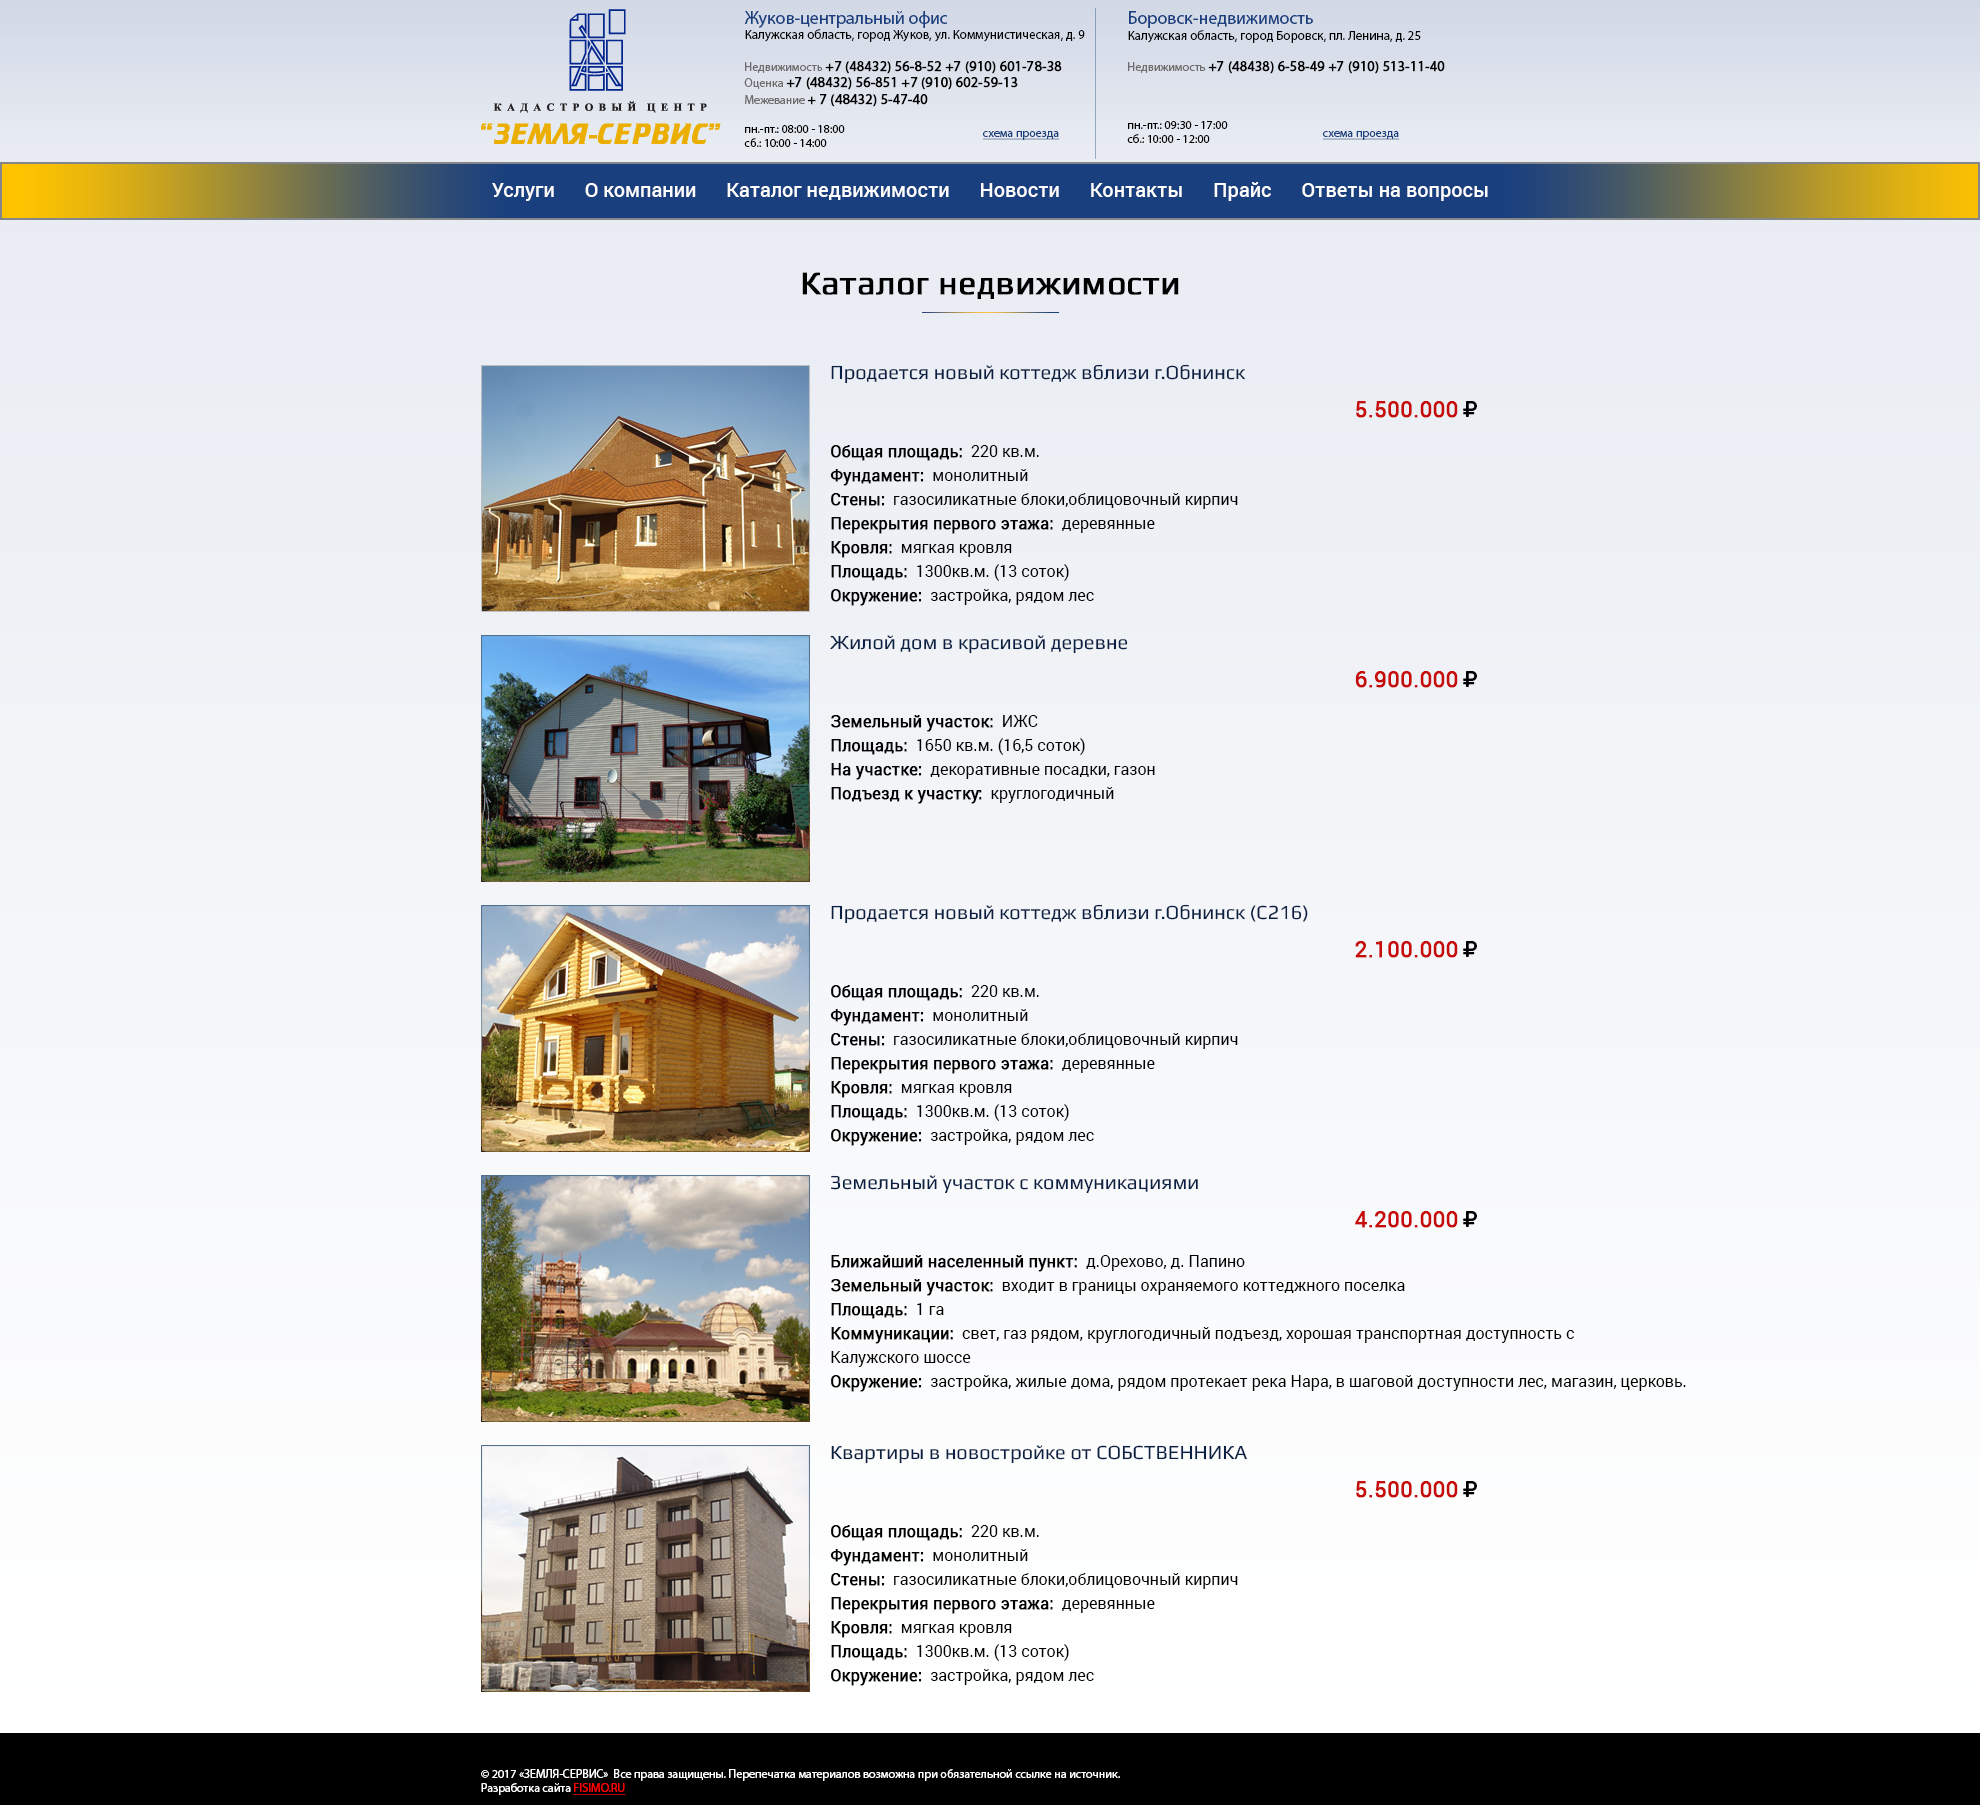 Разработка сайта в Обнинске для Кадастрового центра «Земля-Сервис», раздел сайта "Каталог недвижимости"